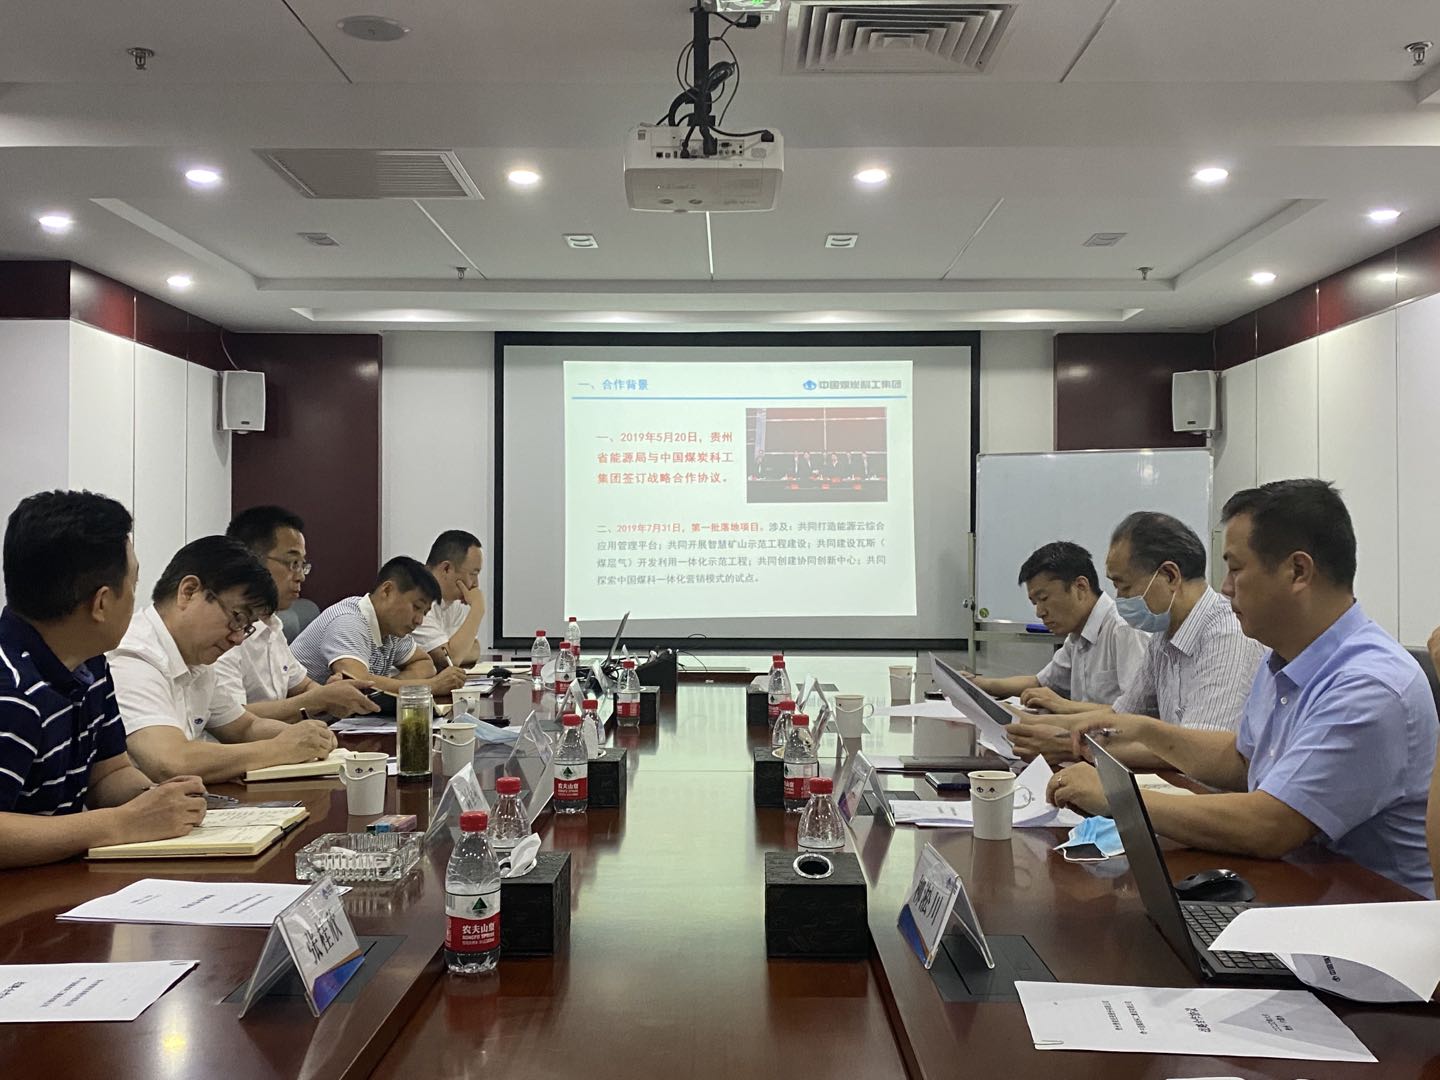 Международная Инжиниринговая Компания и Компания финансового лизинга провели деловой обмен по стратегическому сотрудничеству в регионе Гуйчжоу